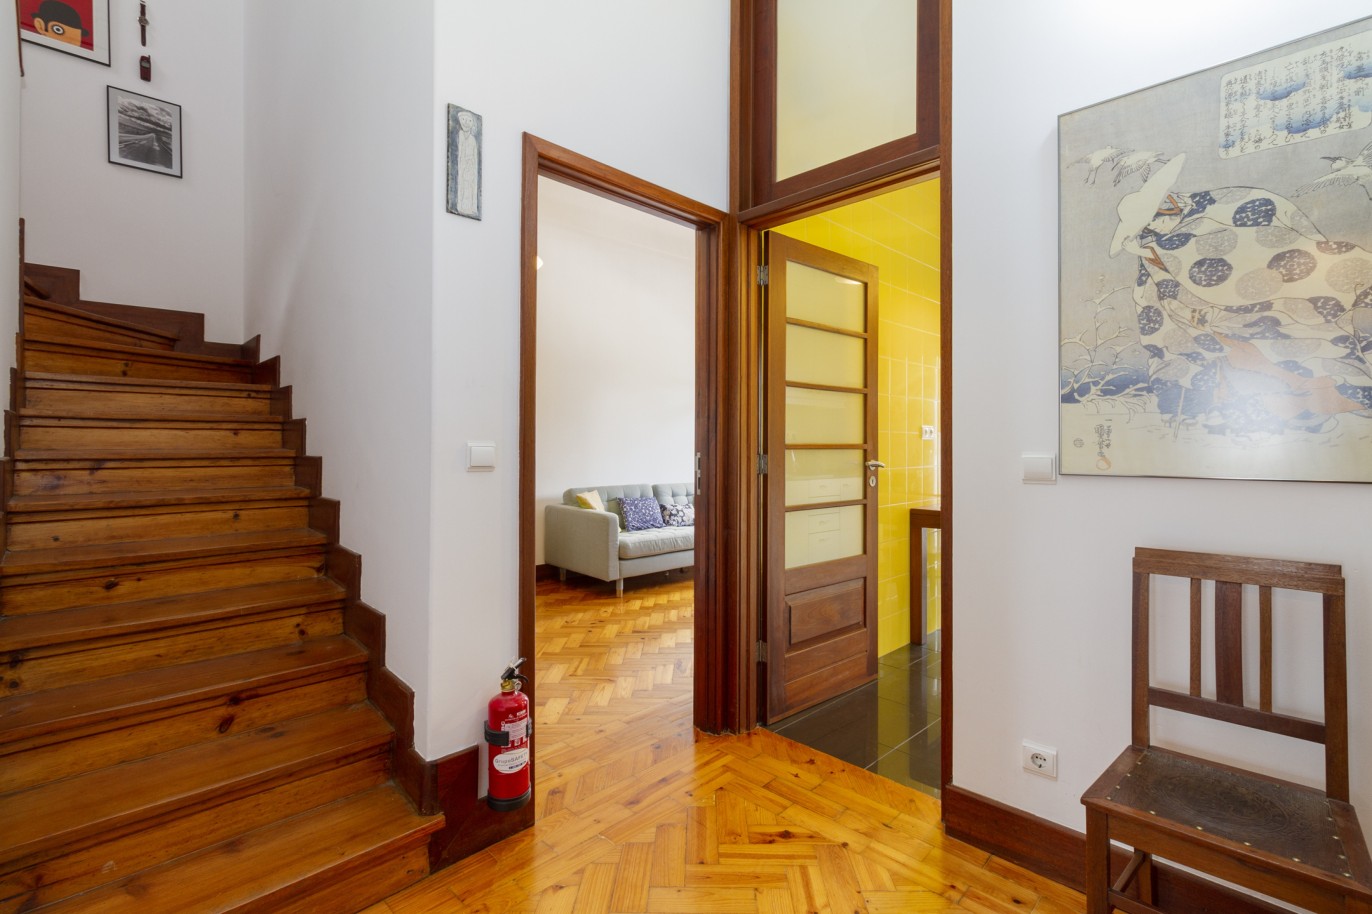 Duplex-Wohnung mit Terrasse, zu verkaufen, in Bairro das Artes, Porto, Portugal_220024